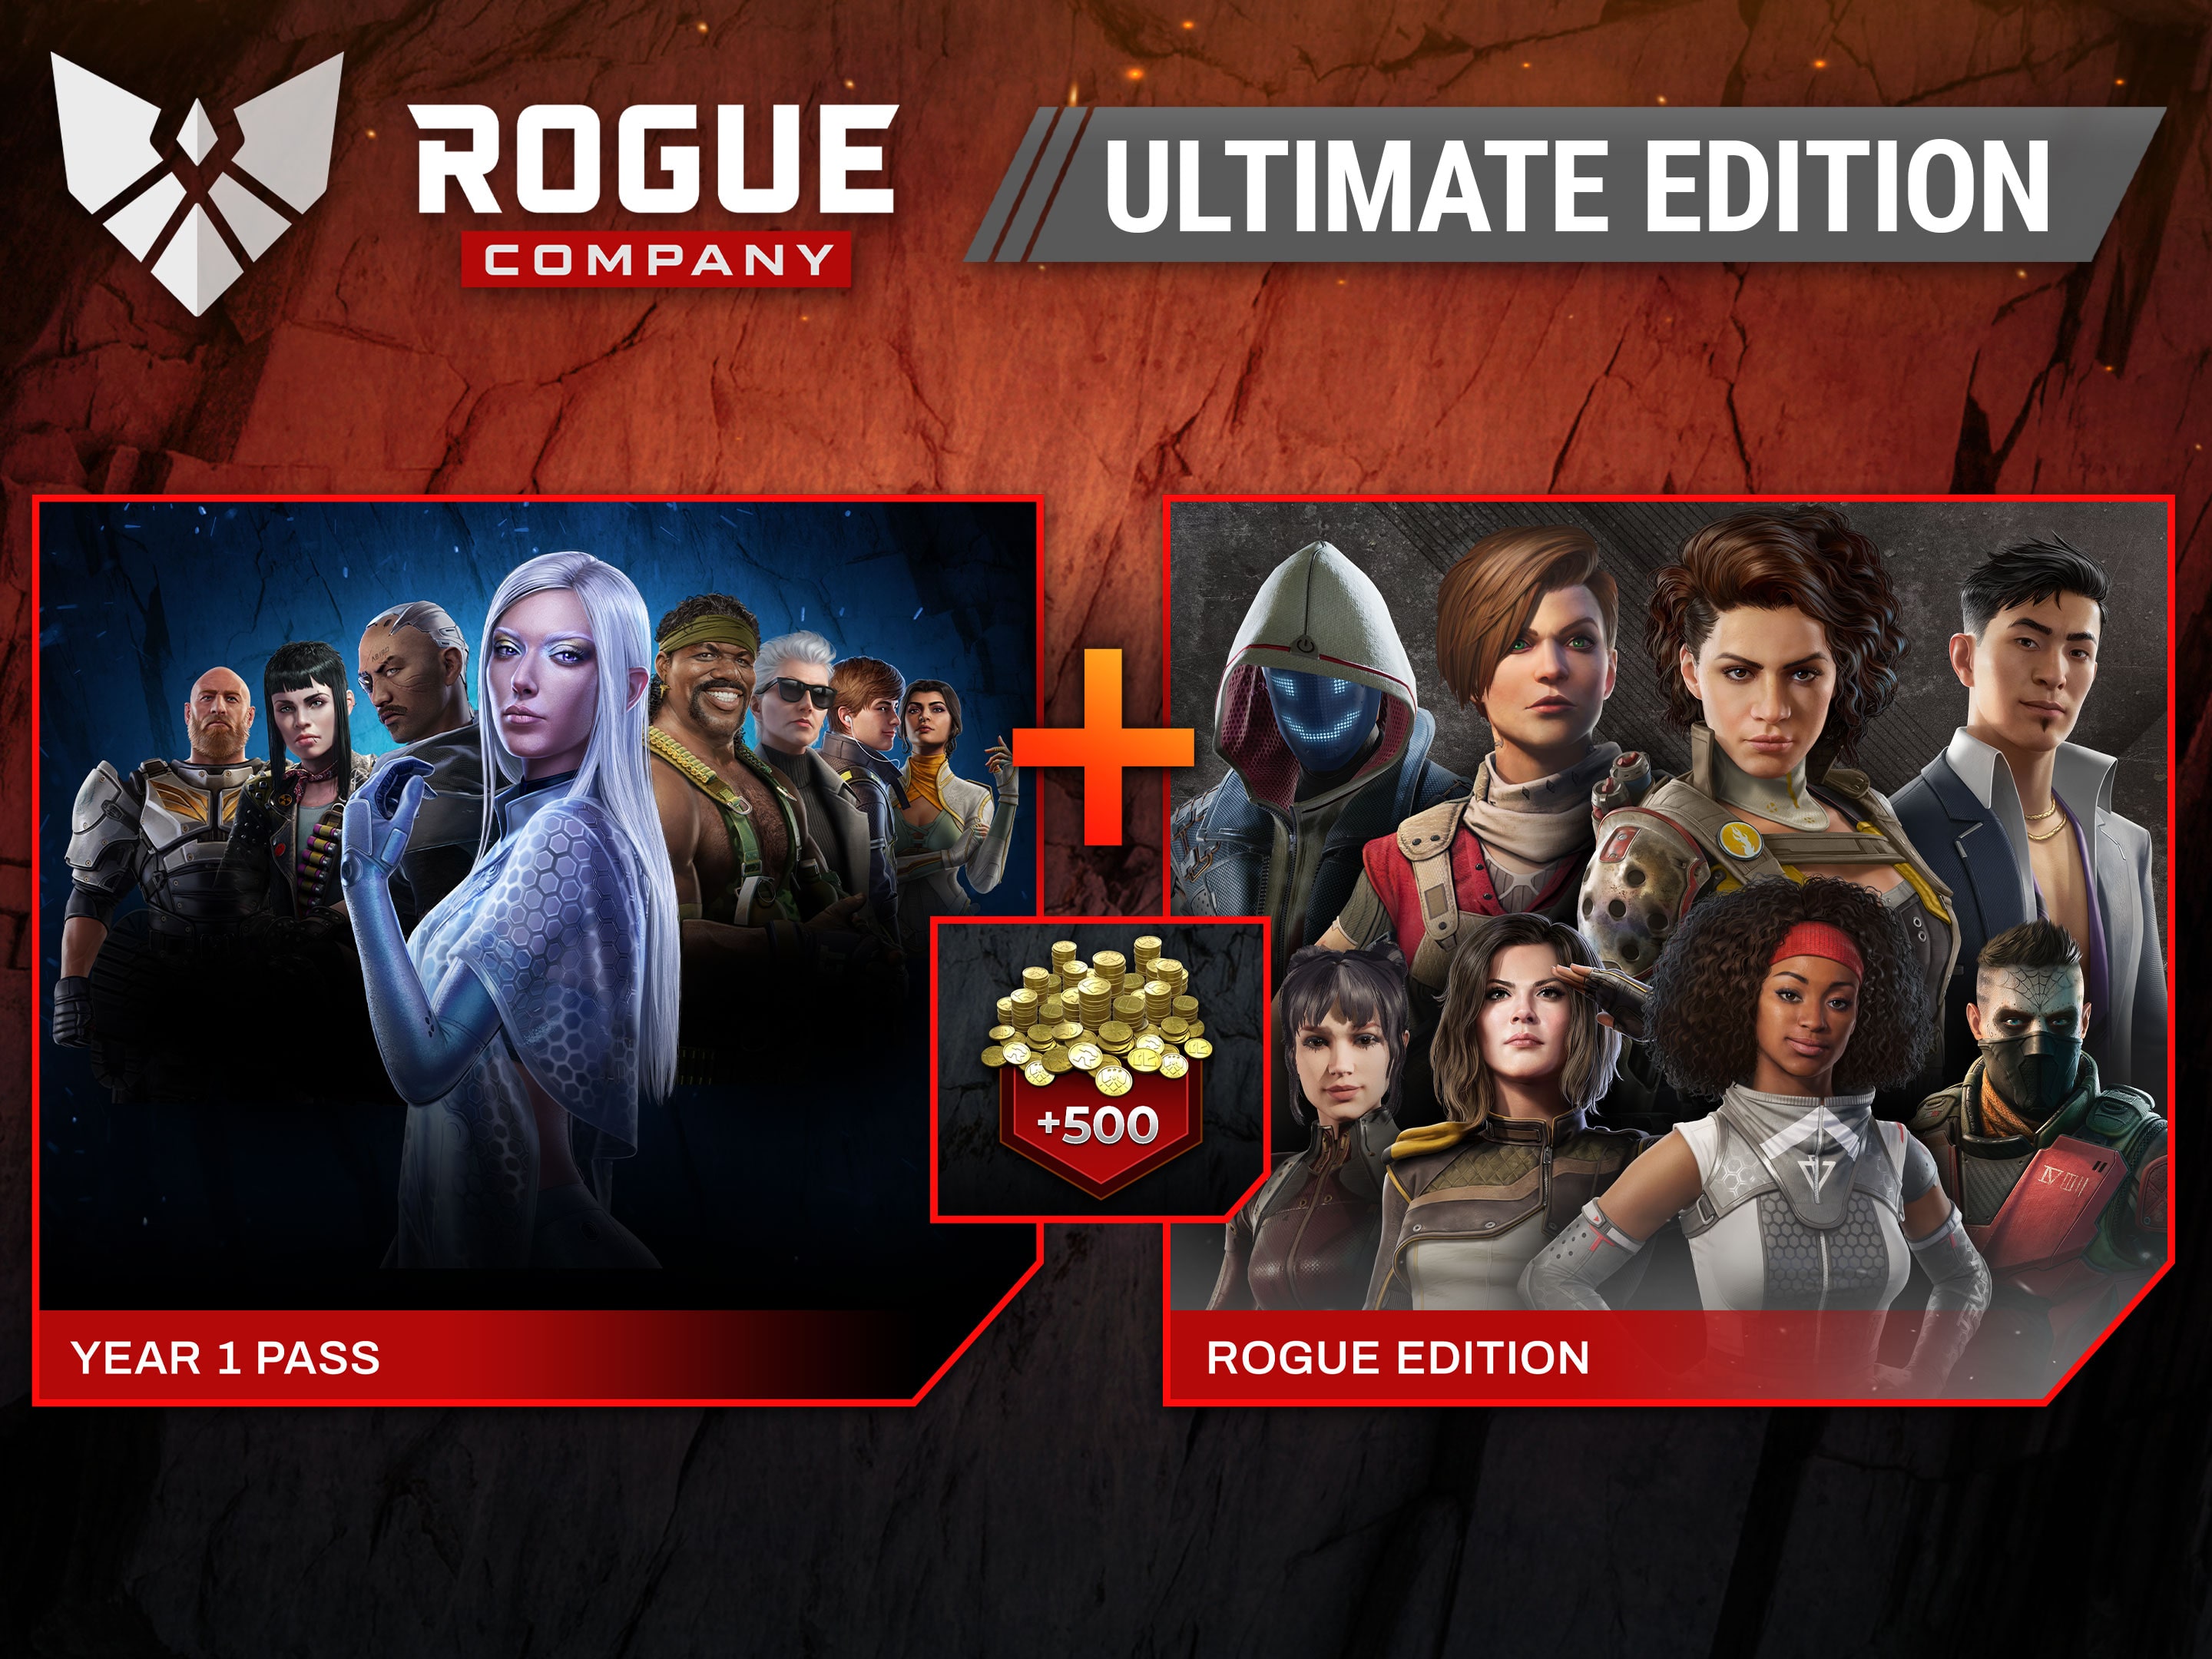 Rogue Company, PC Game